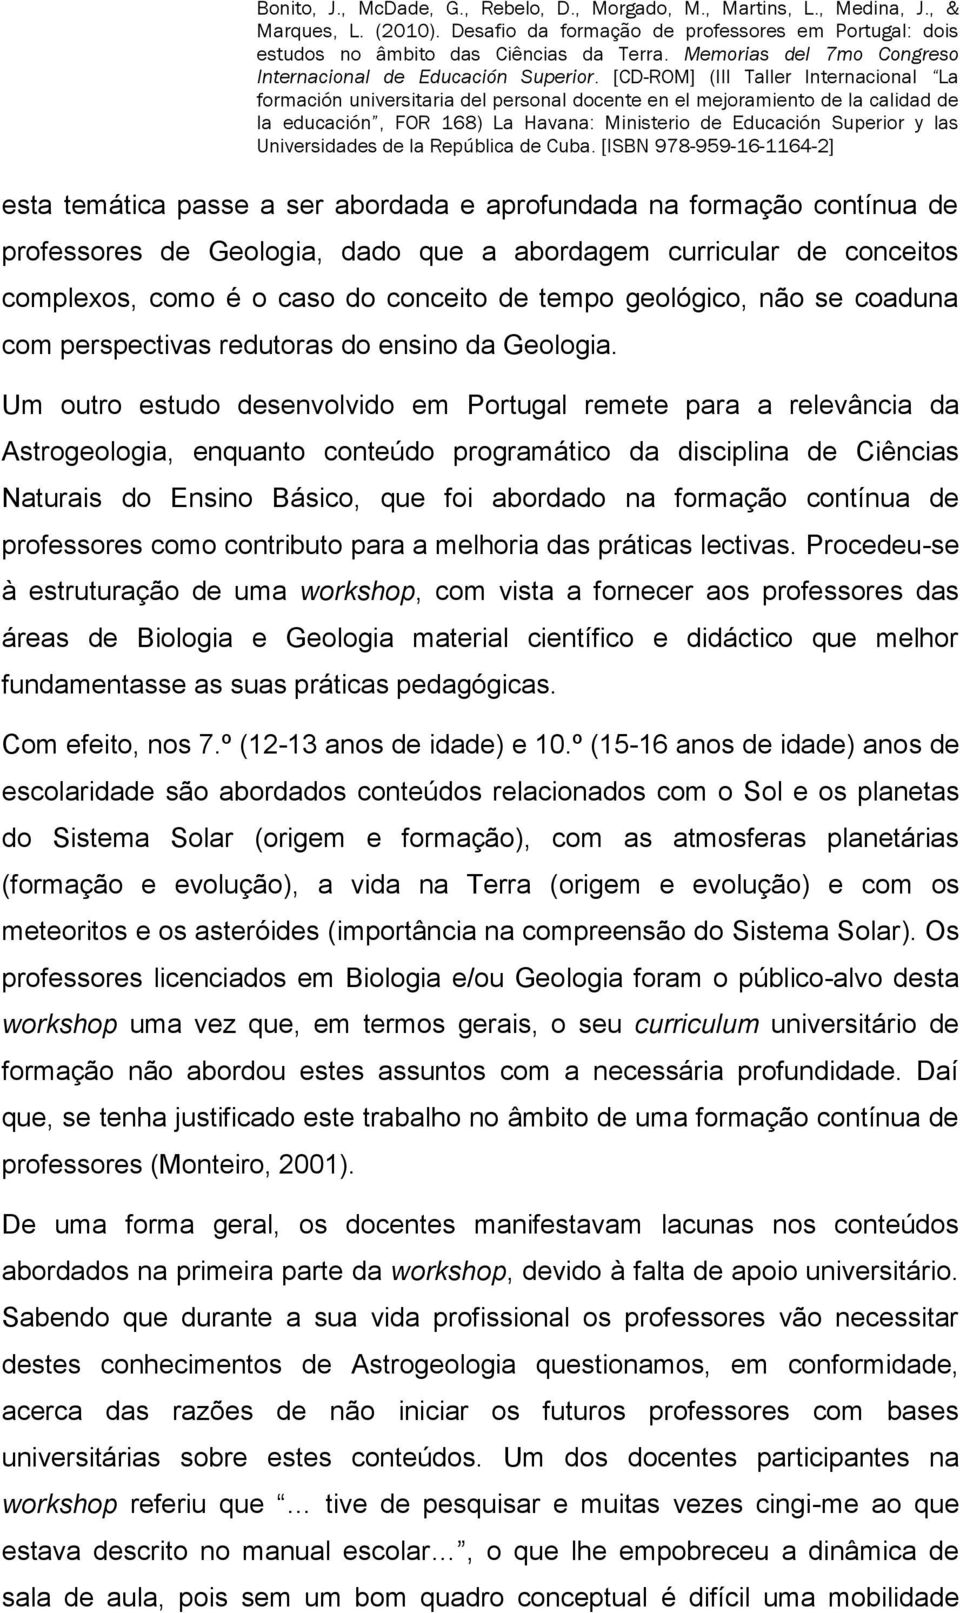 Um outro estudo desenvolvido em Portugal remete para a relevância da Astrogeologia, enquanto conteúdo programático da disciplina de Ciências Naturais do Ensino Básico, que foi abordado na formação